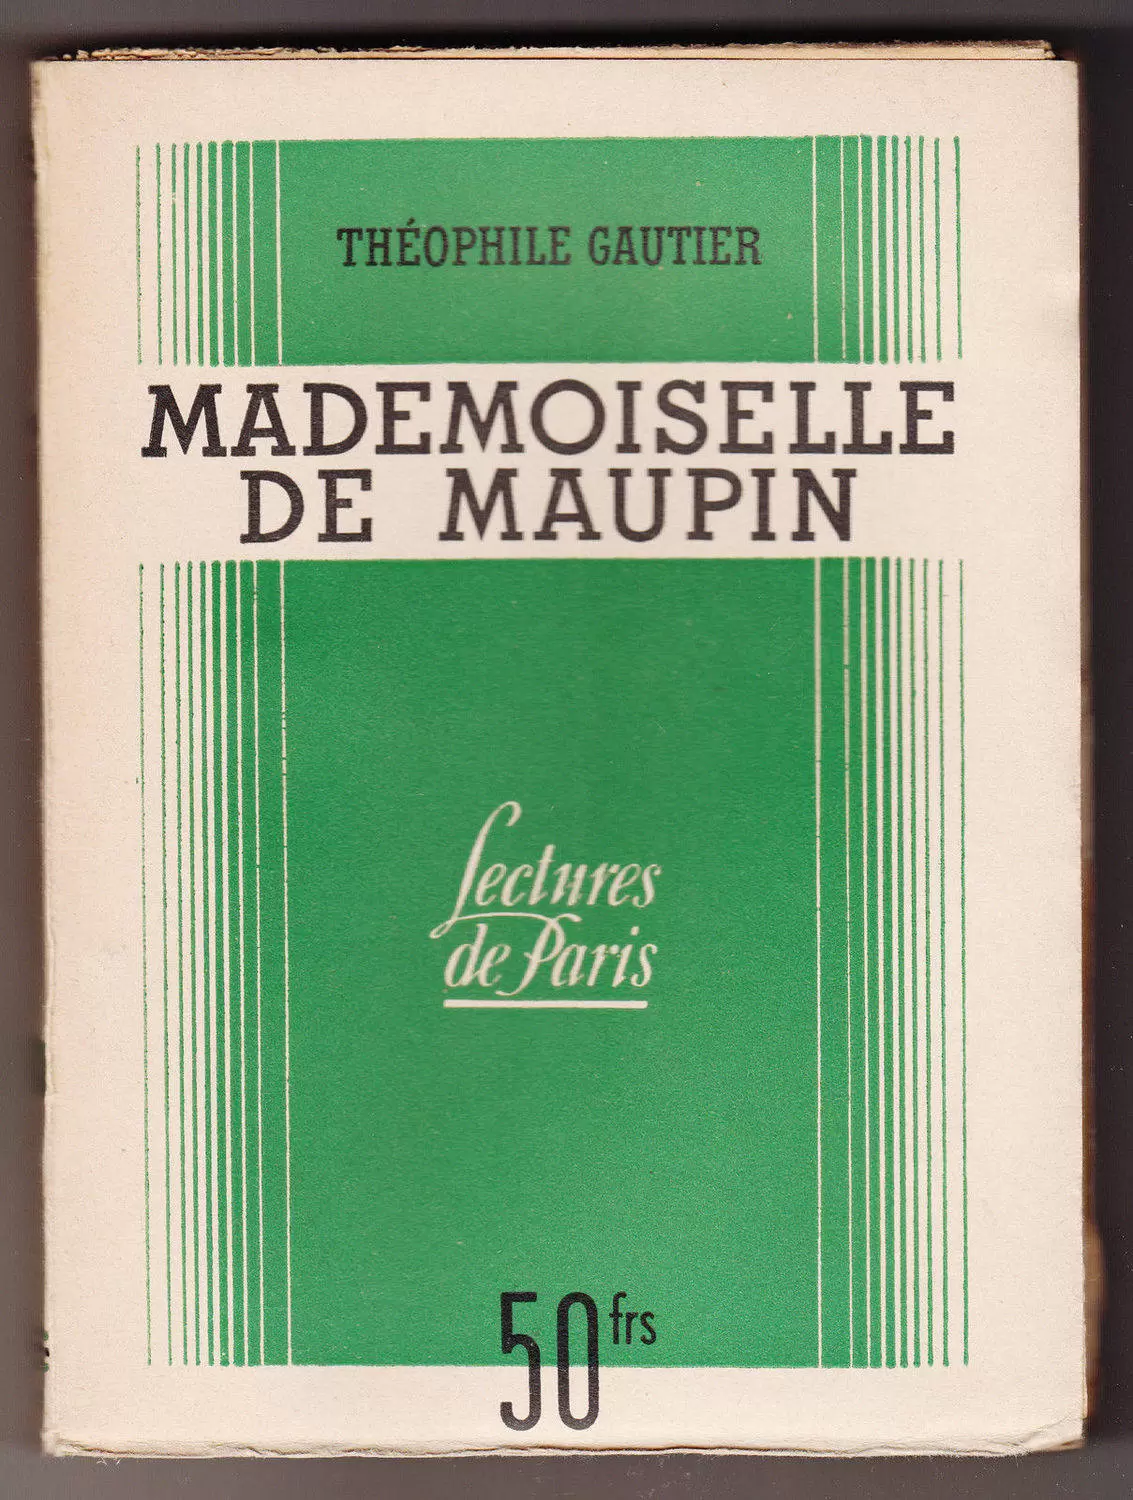 S.E.P.E. Lectures de Paris - Mademoiselle de Maupin